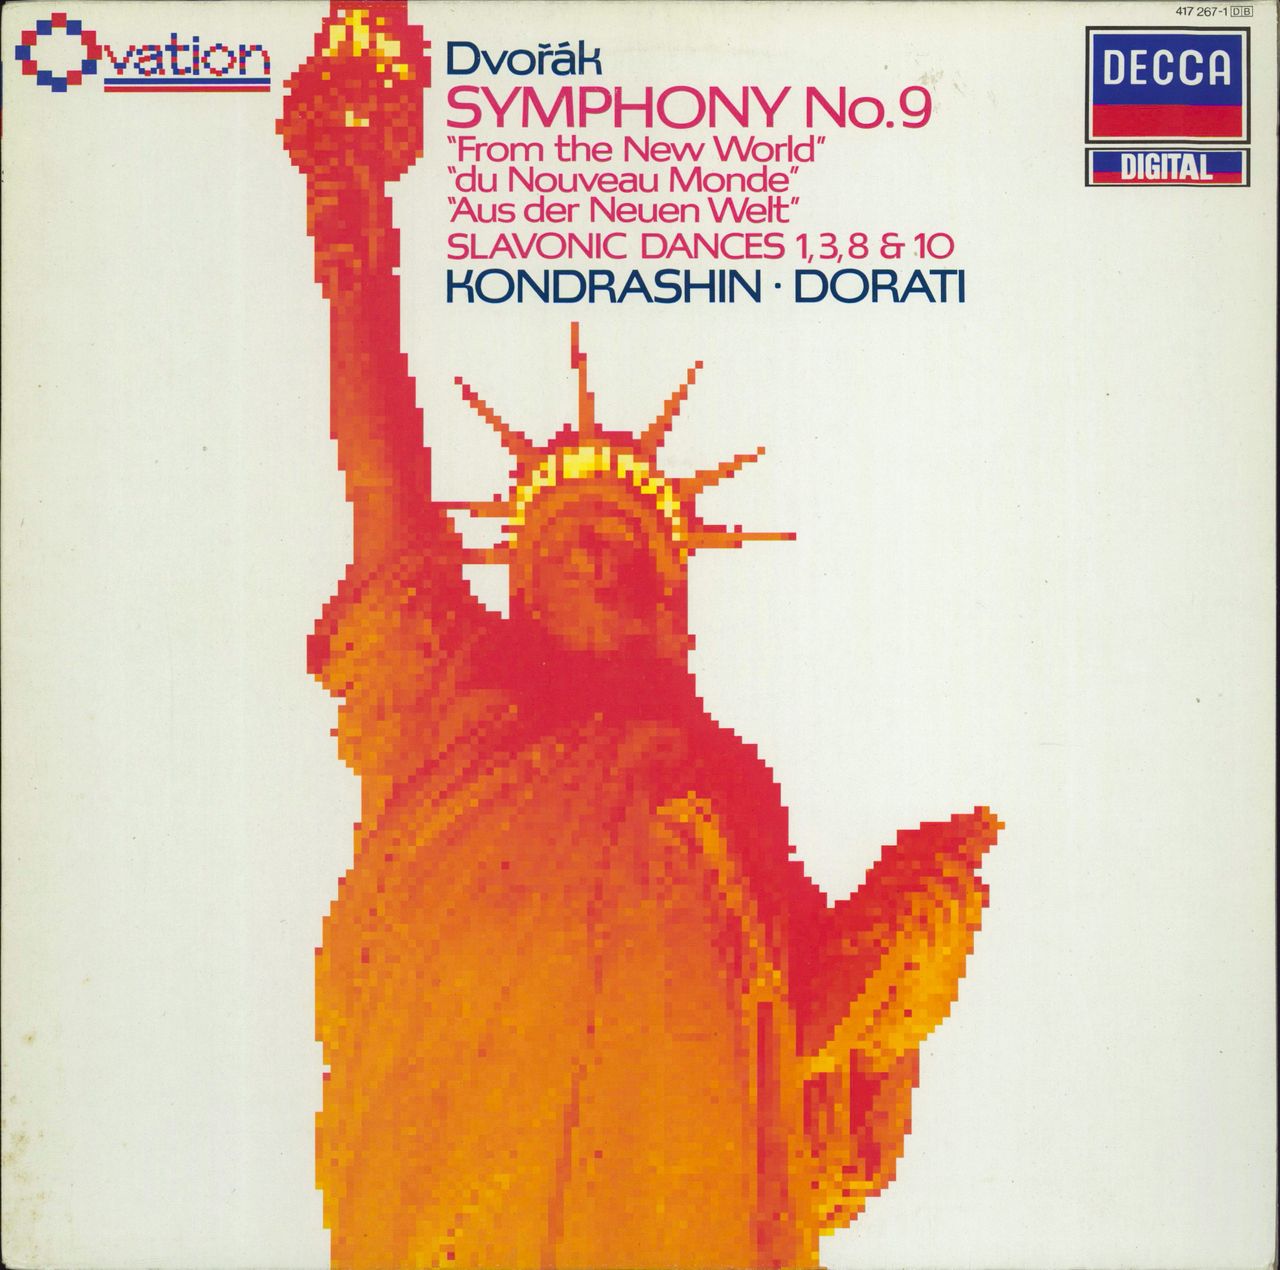 Antonín Dvorák Dvorák: Symphony No.9 "From The New World" / Slavonic Dances UK vinyl LP album (LP record) 417267-1